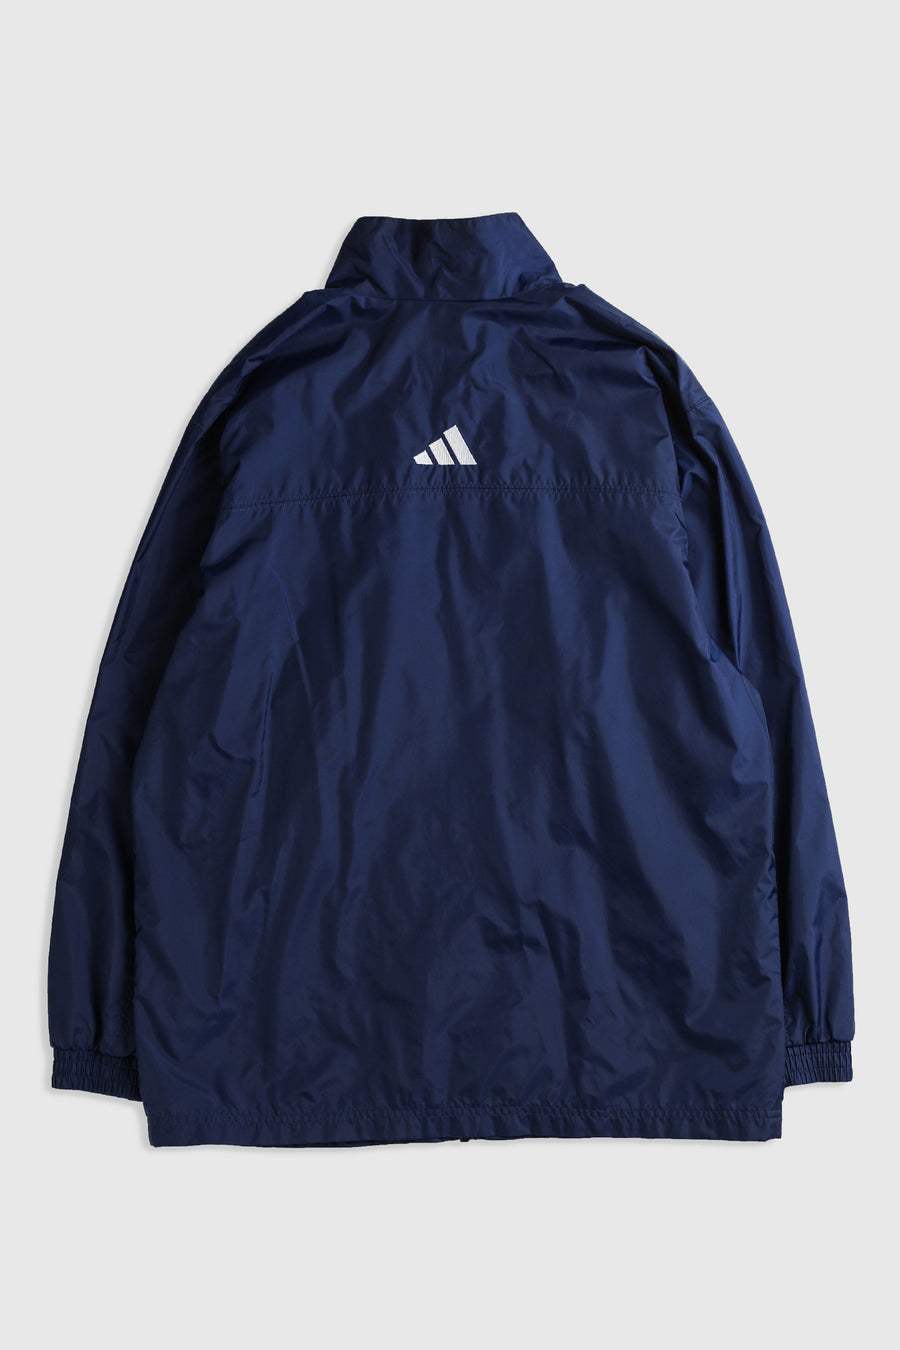 Vintage Adidas Windbreaker Jacket